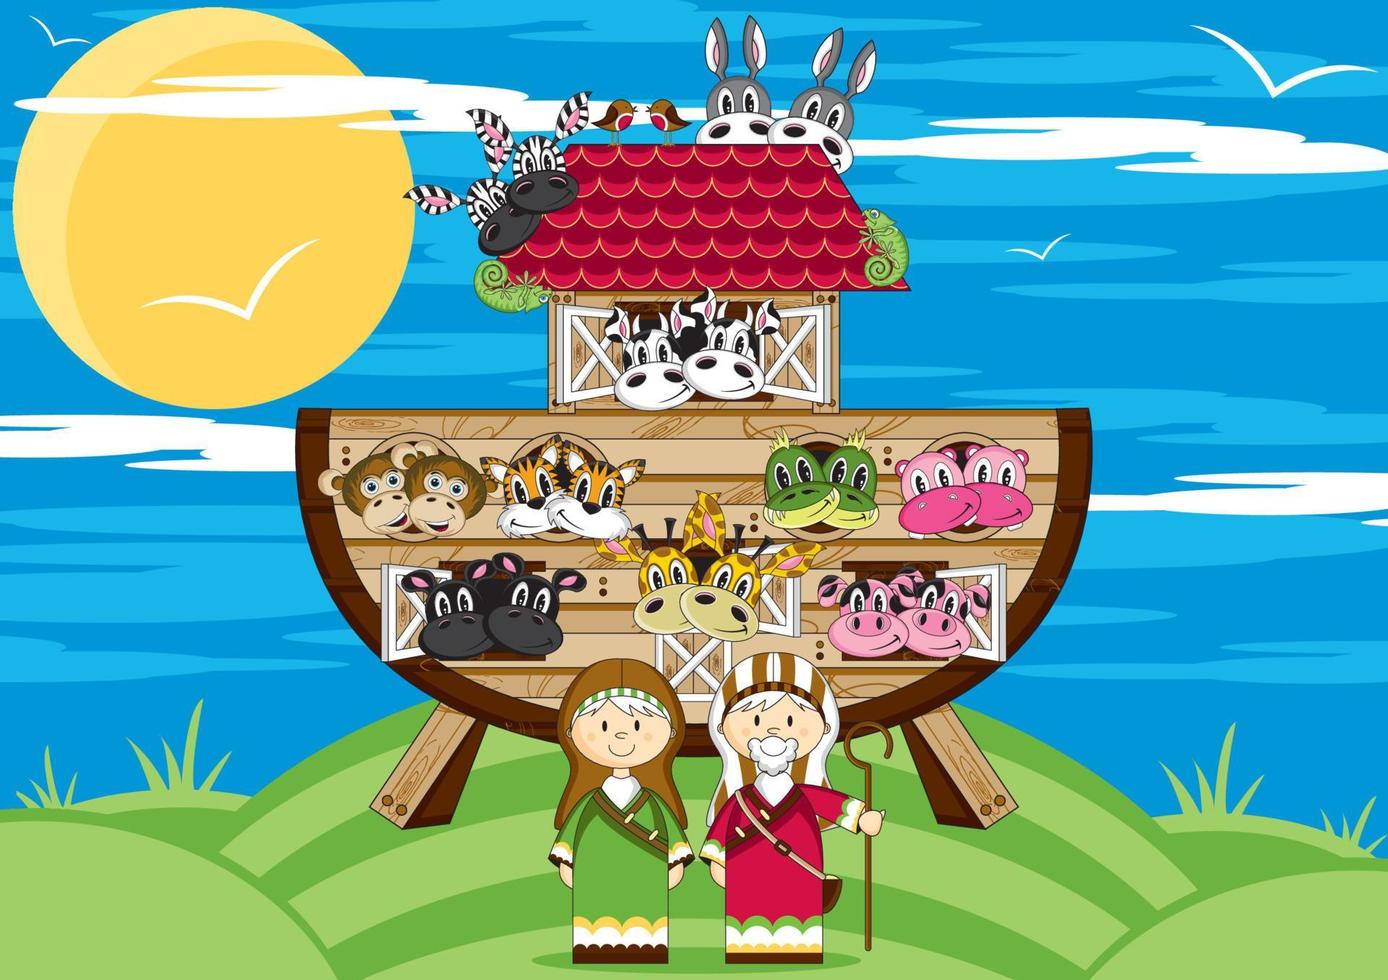 Noé et le arche avec animaux deux par deux - biblique illustration vecteur